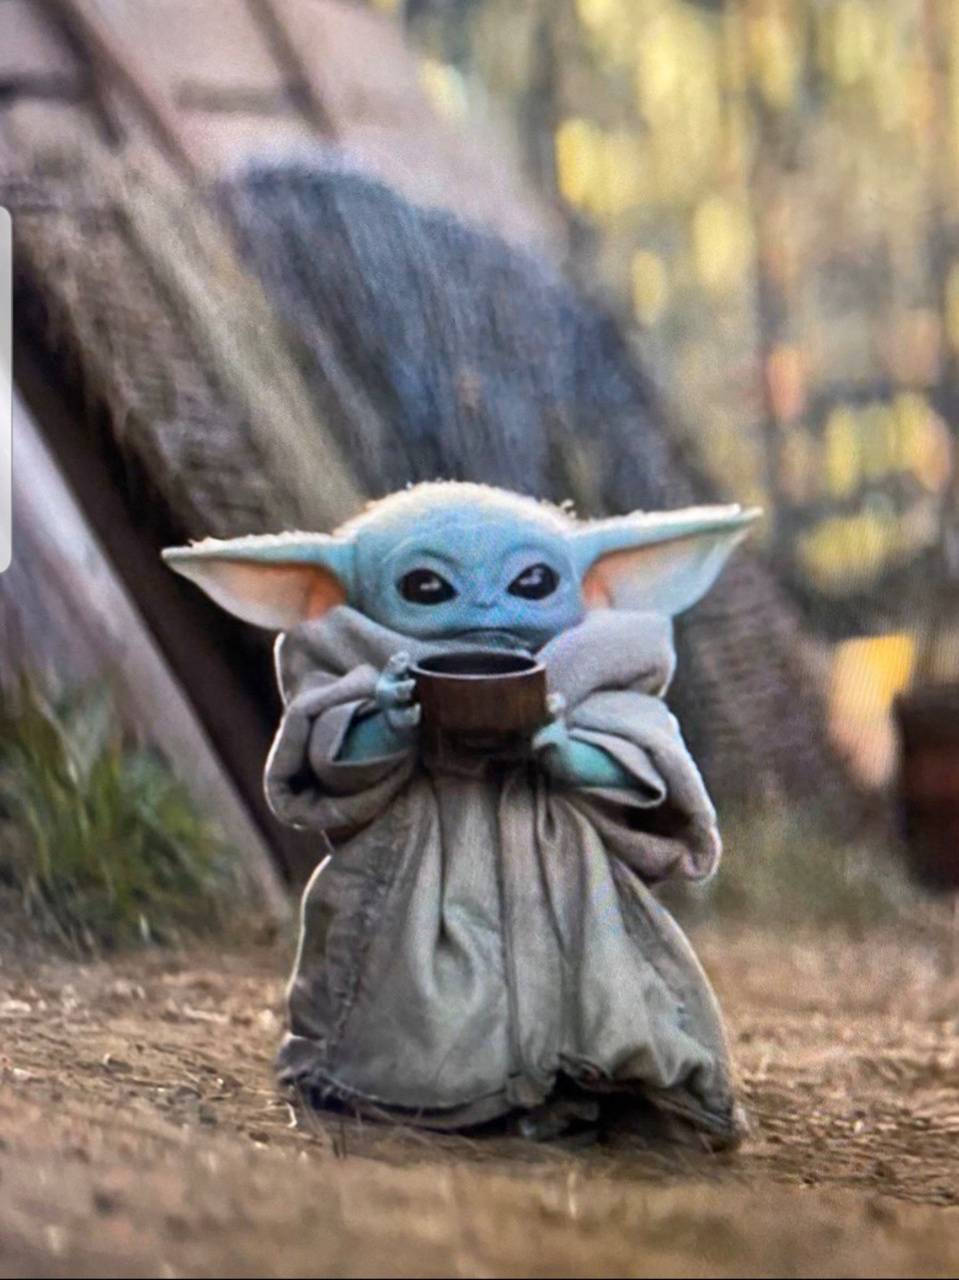 Adorable Baby Yoda With Tea